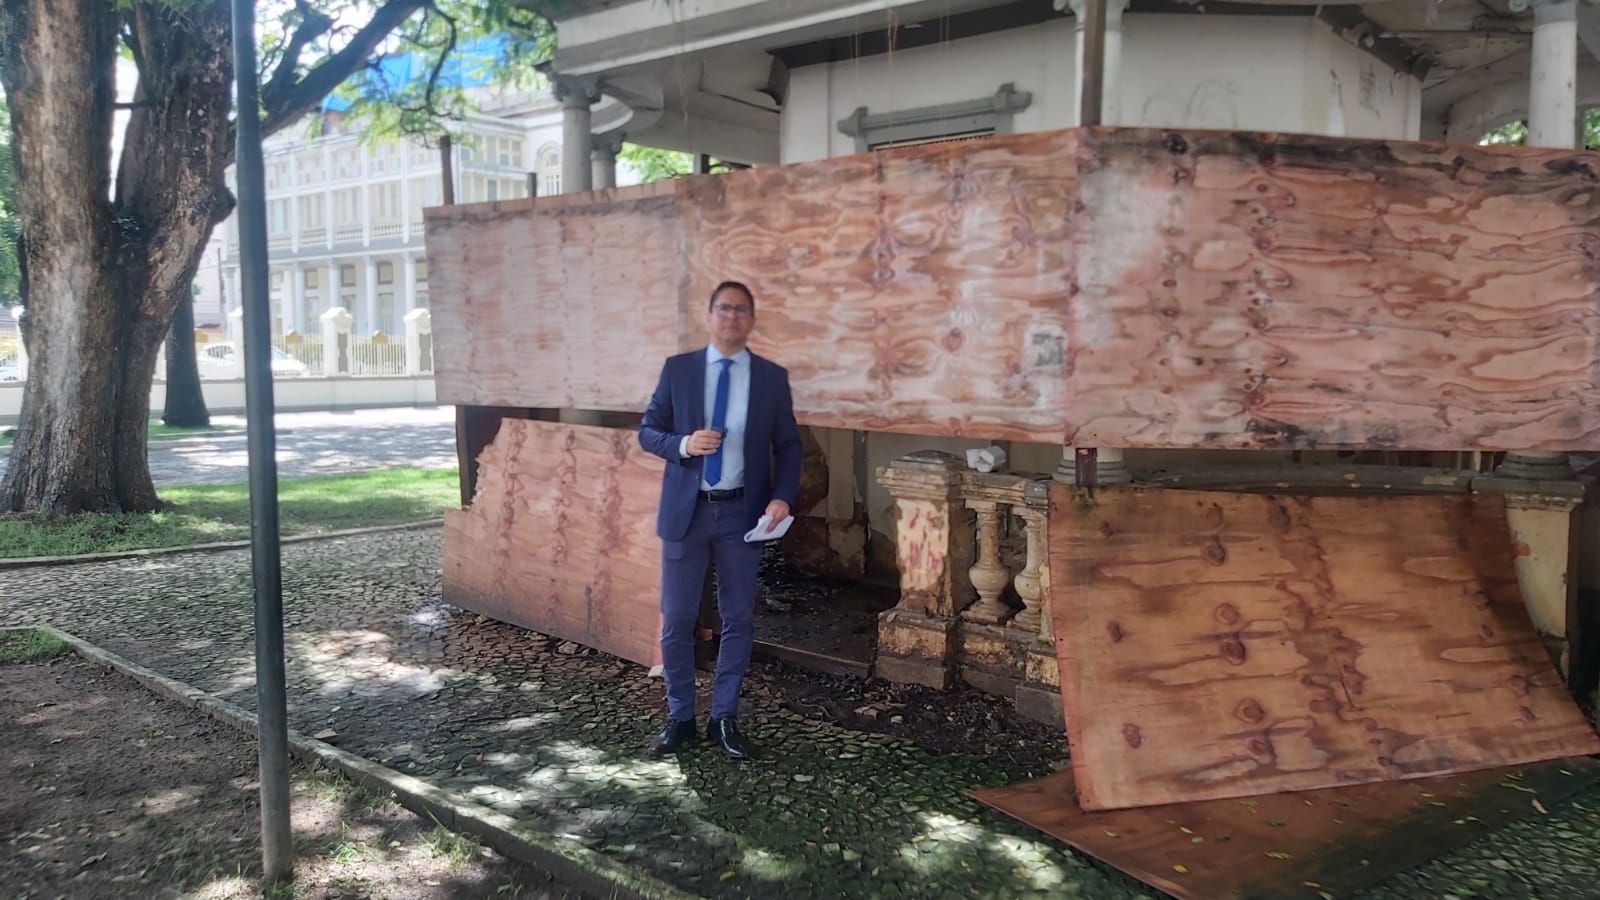 Ricardo Marques lamenta abandono e descaso com prédios históricos no centro de Aracaju